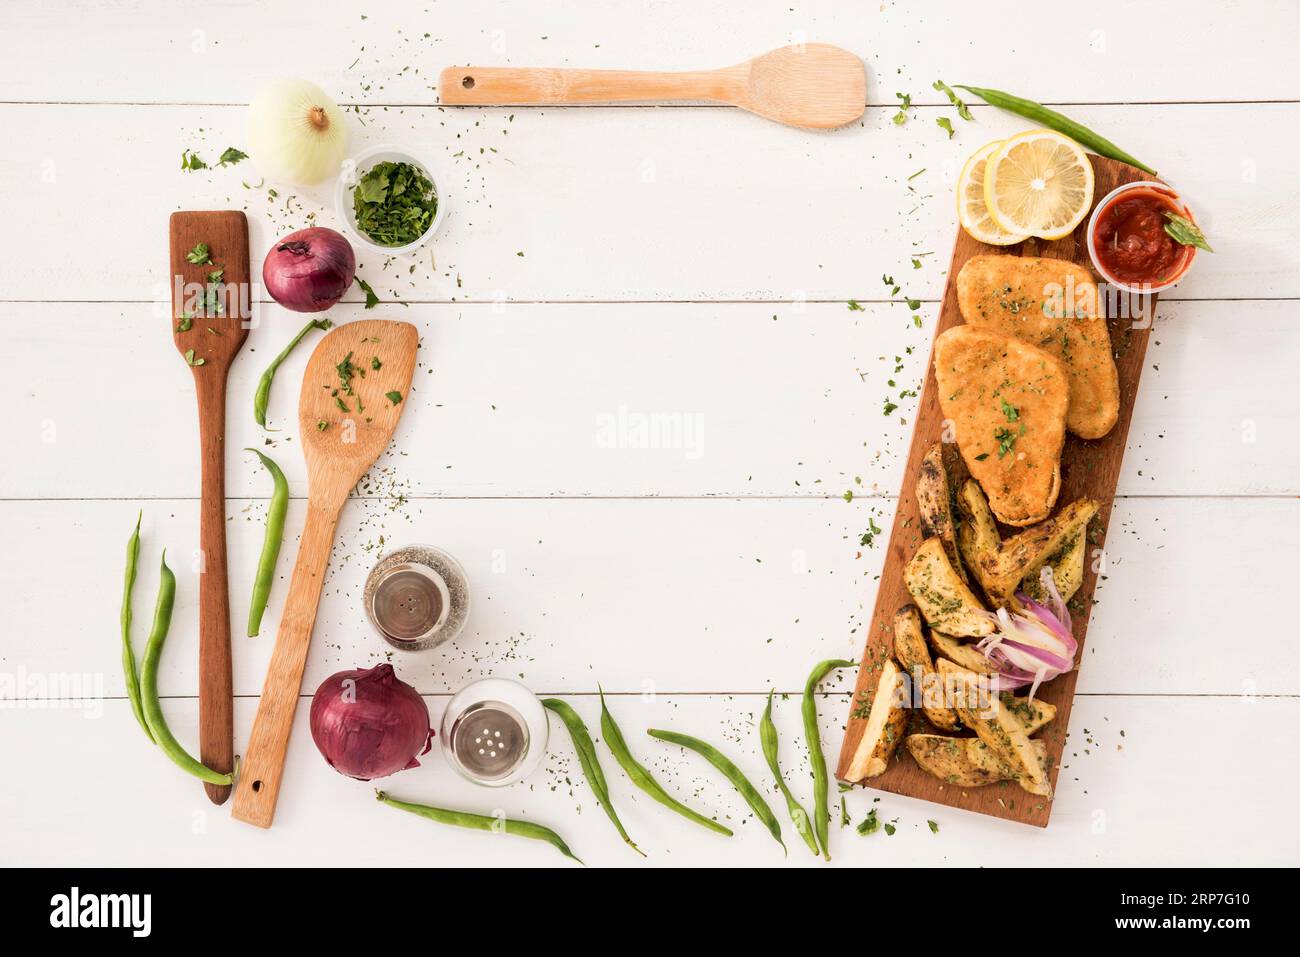 Disposizione dei bordi con utensili da cucina, tavolo in legno per pasti pronti Foto Stock